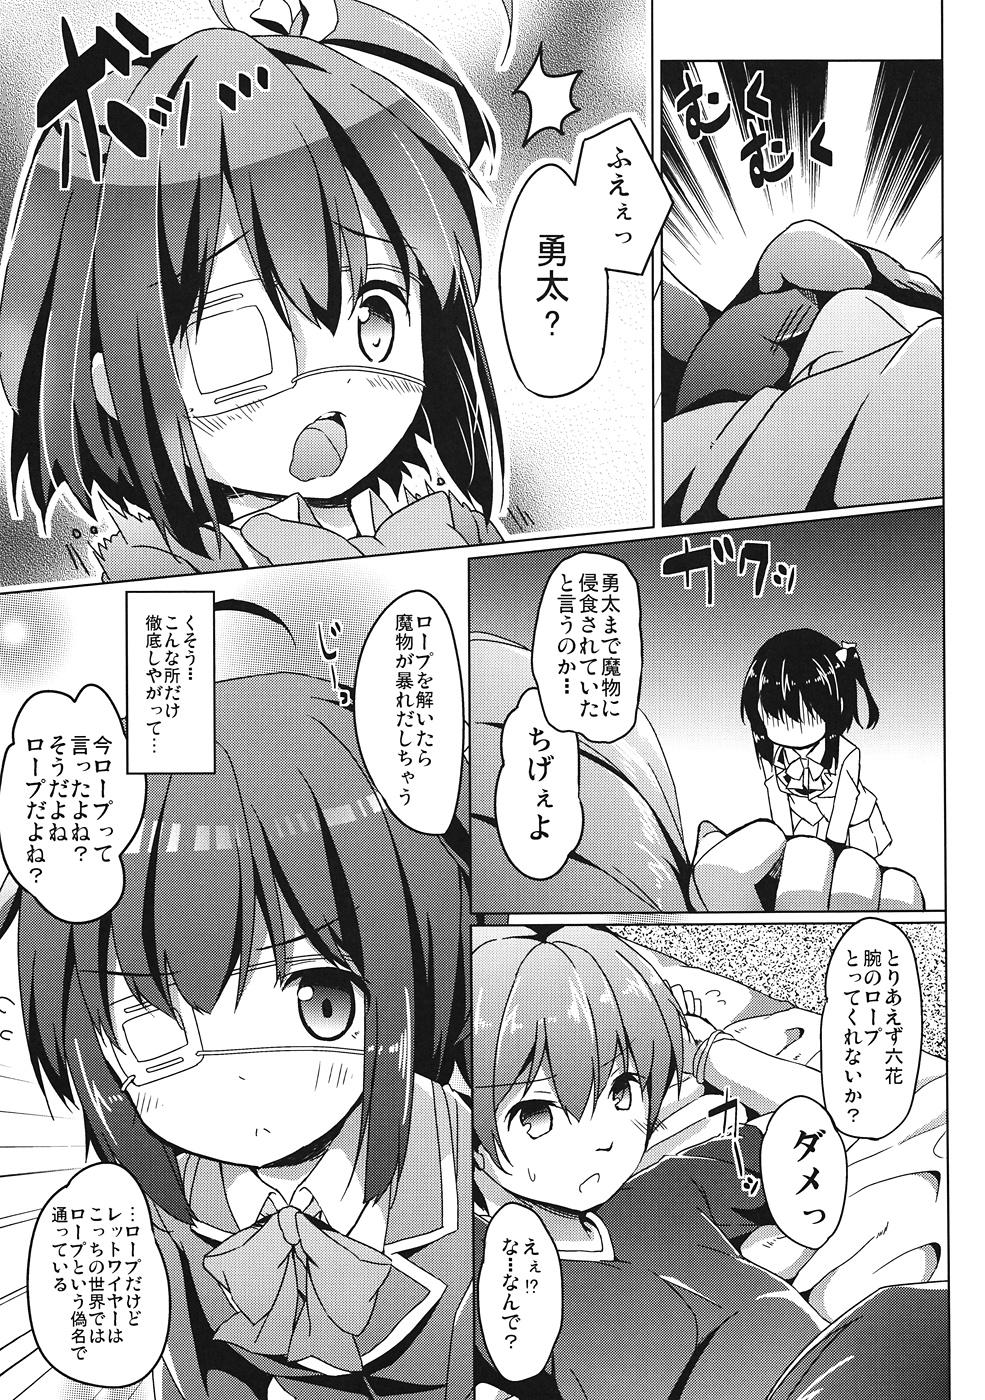 Bigdick Rikka-chan wa Koi ga Shitai - Chuunibyou demo koi ga shitai Tiny Titties - Page 6